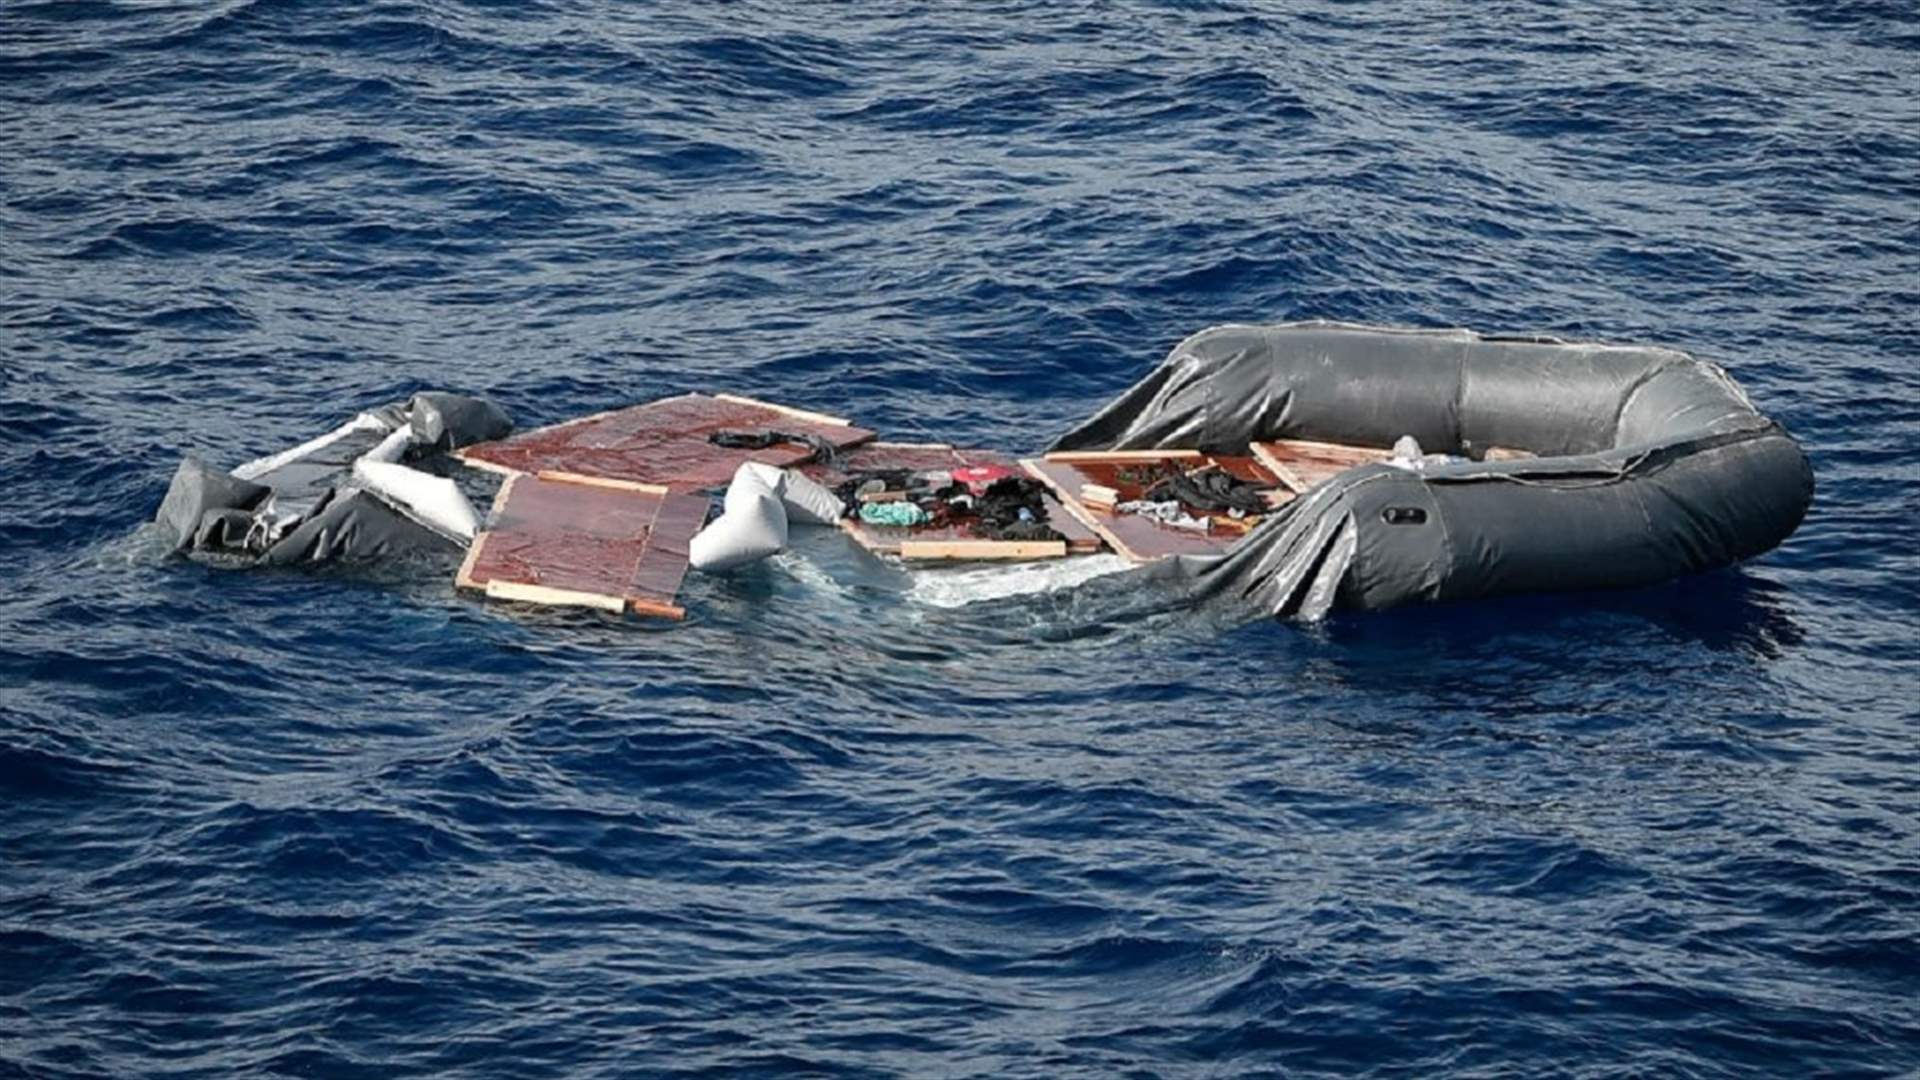 العثور على ثلاثة مهاجرين مفارقين الحياة قبالة جزر الكانري وإنقاذ 15